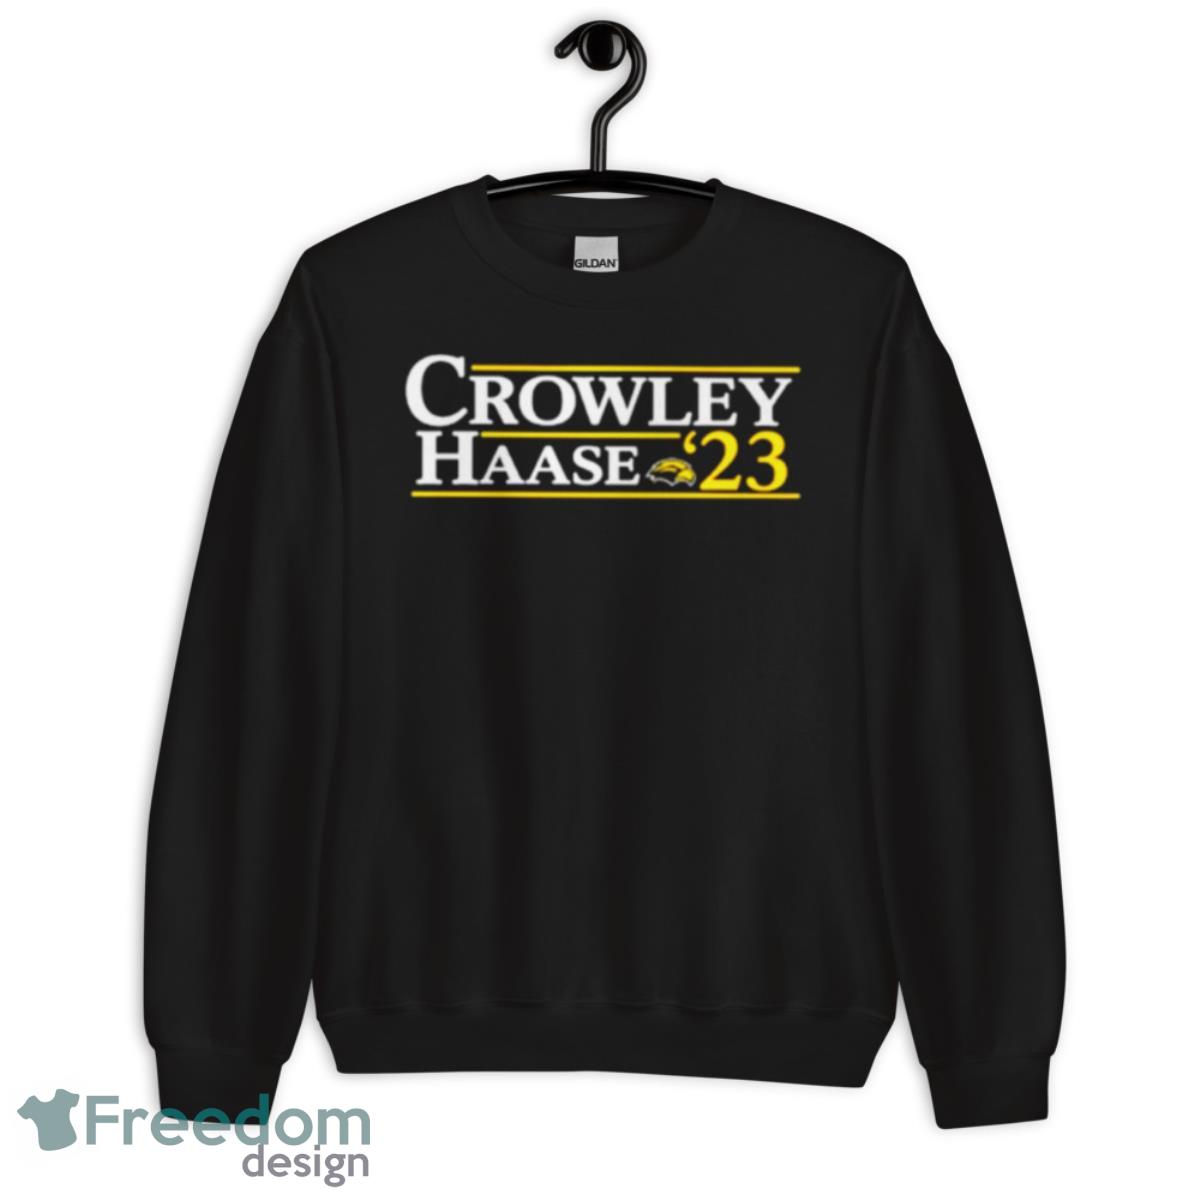 Crowley Haase 23 shirt